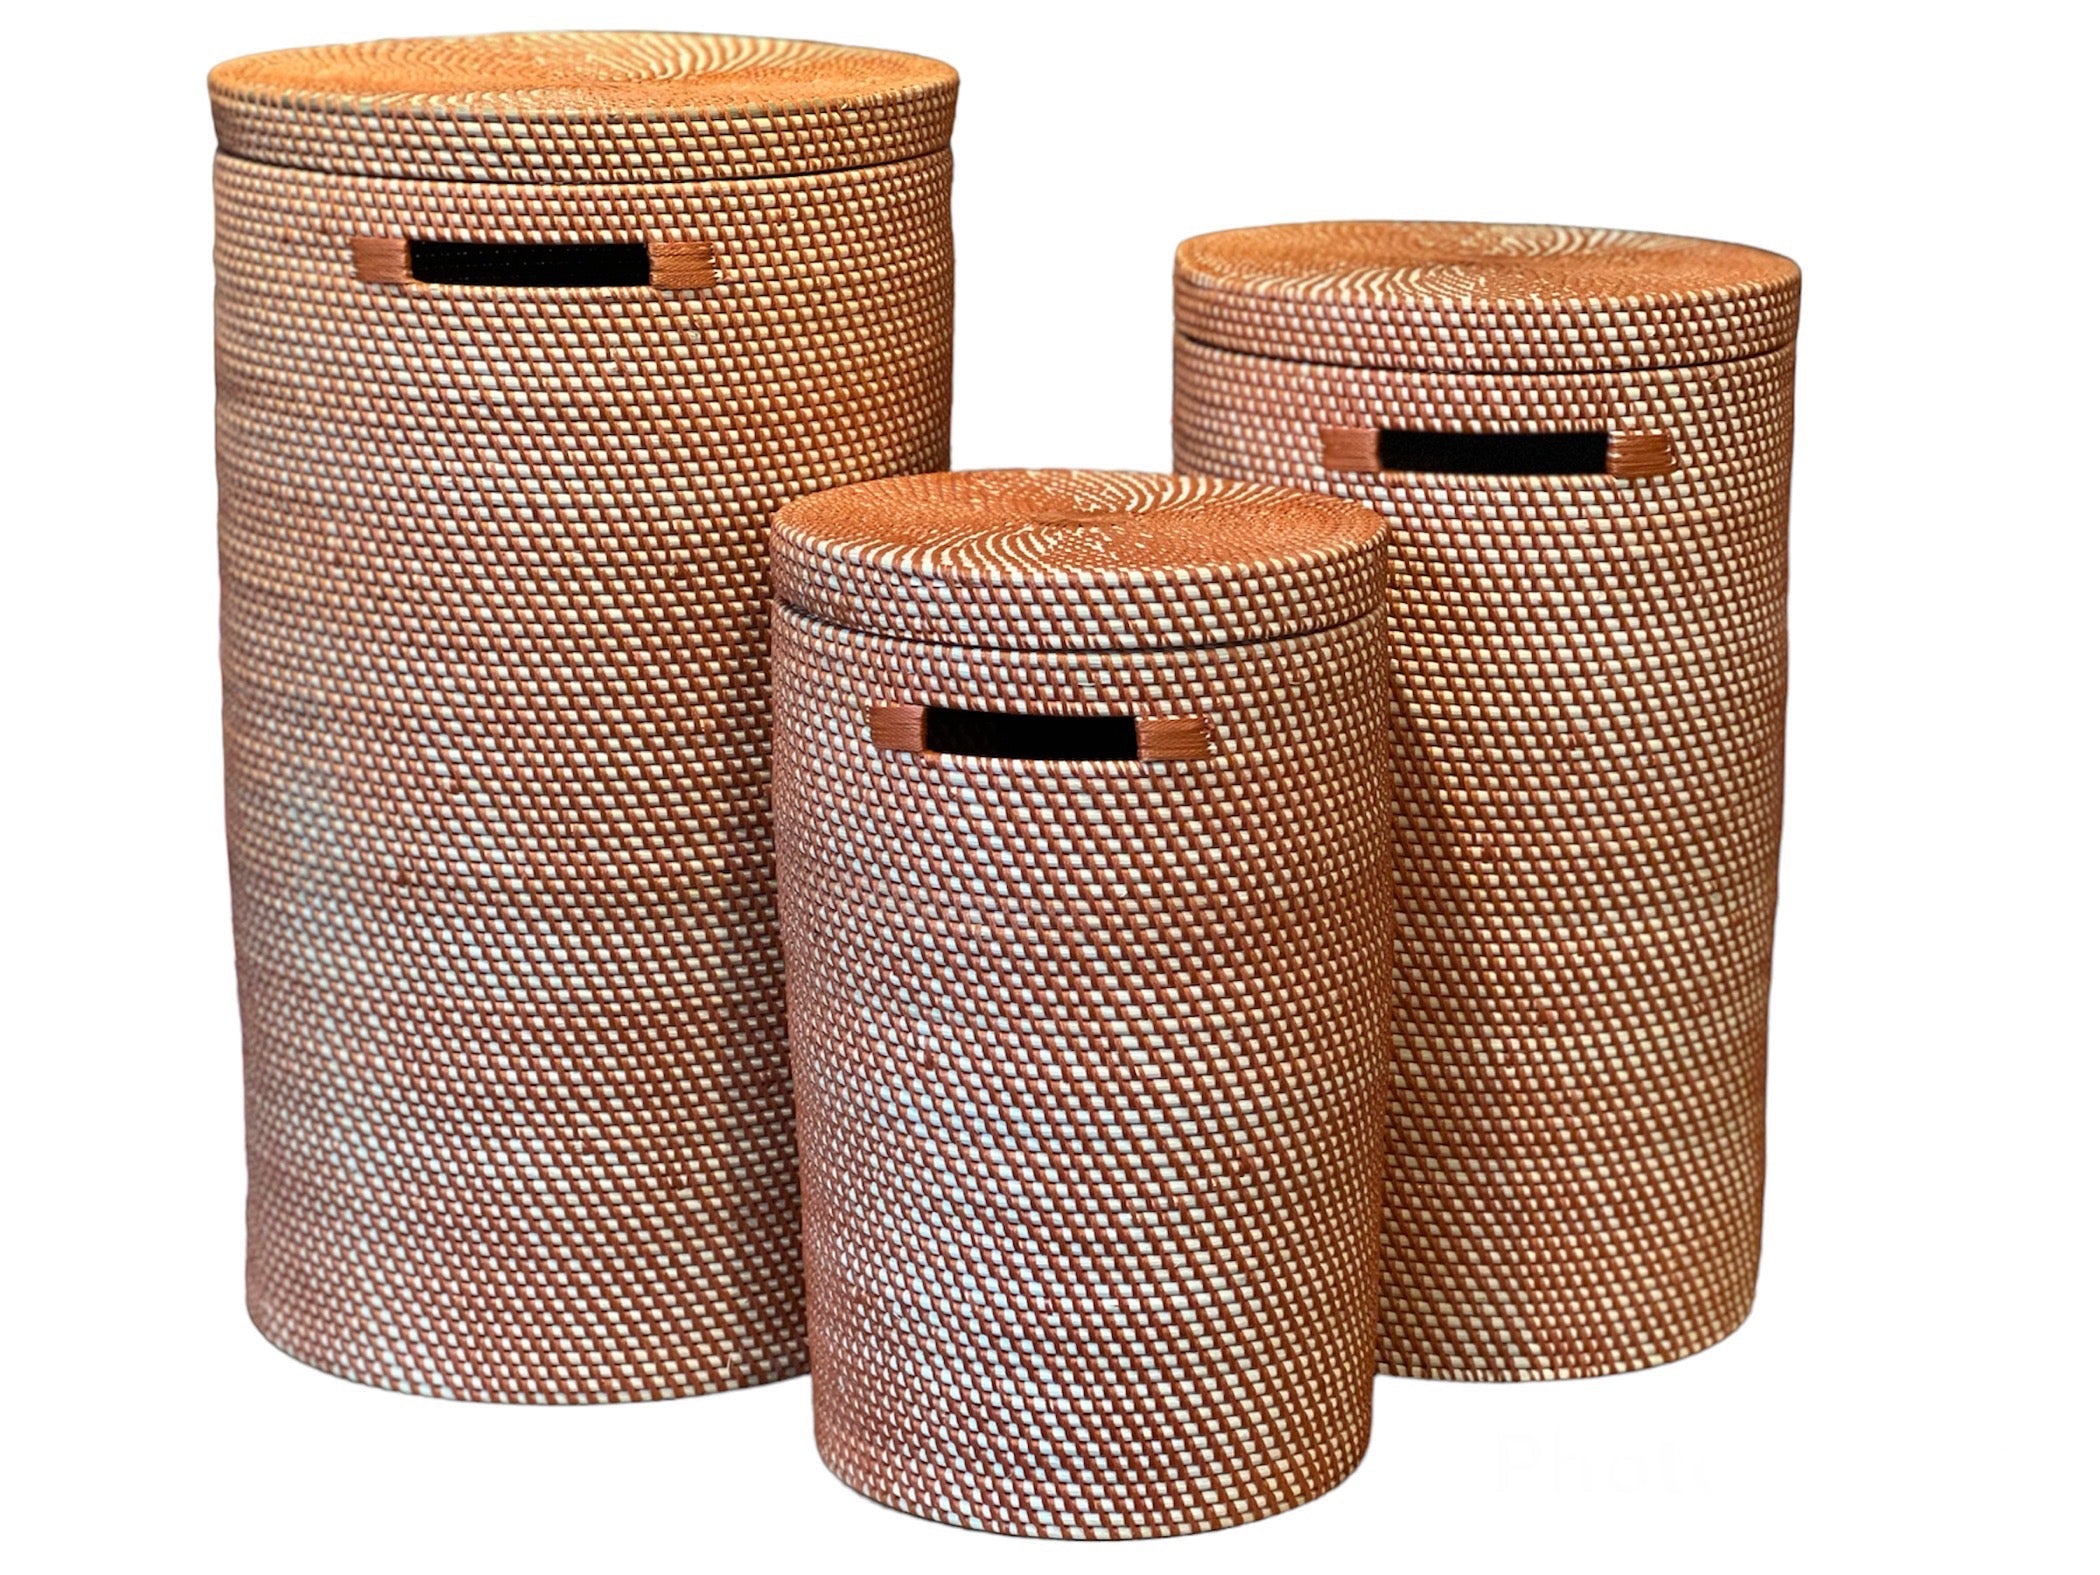  håndlavede bambuskurv, der er flettet med genbrugsplast i en smuk terracottafarve.